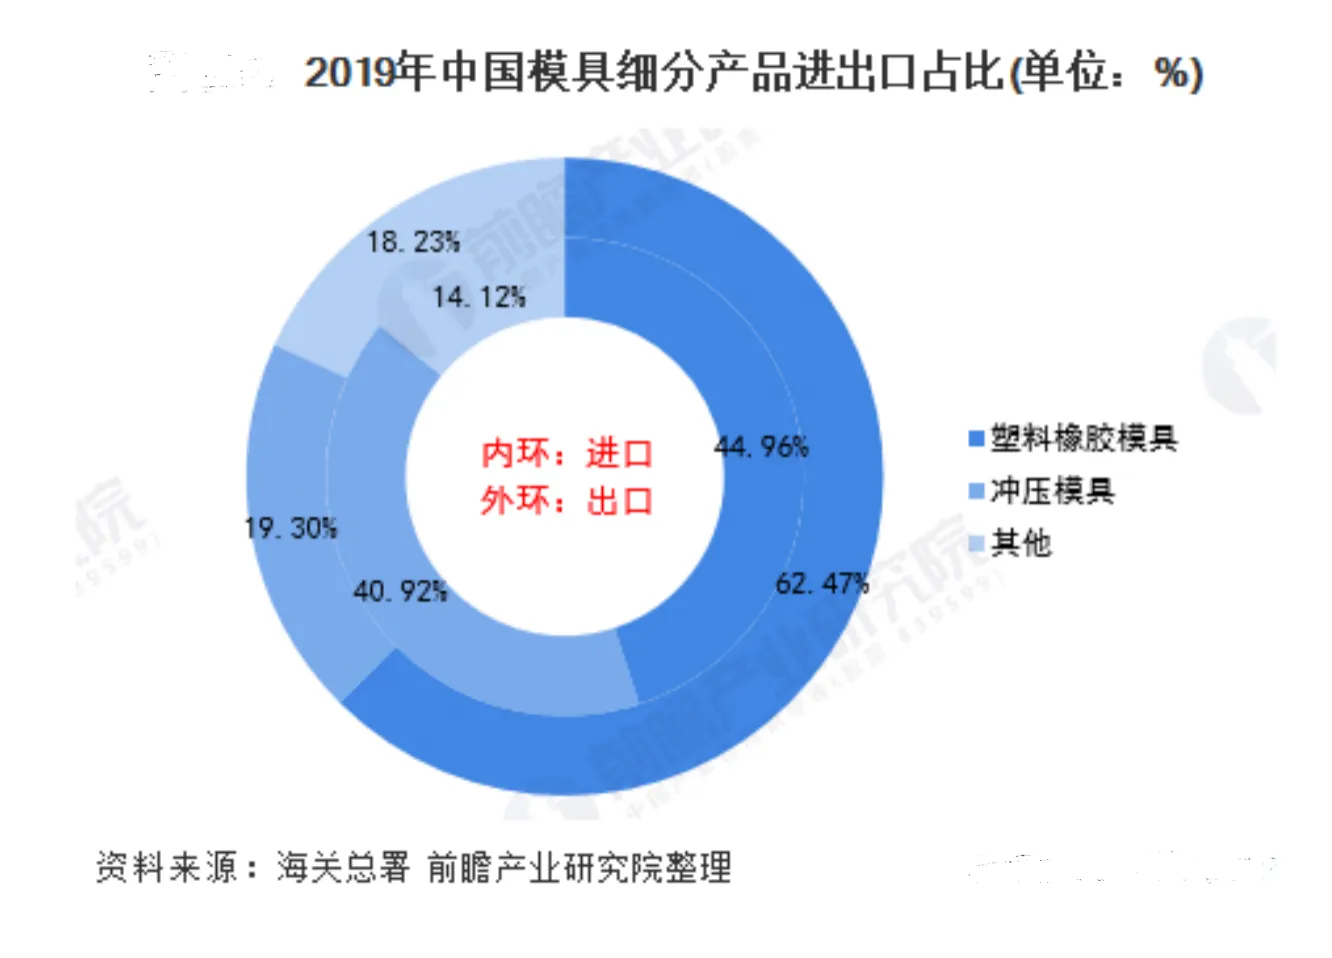 2019年中国模具细分产品进出口占比